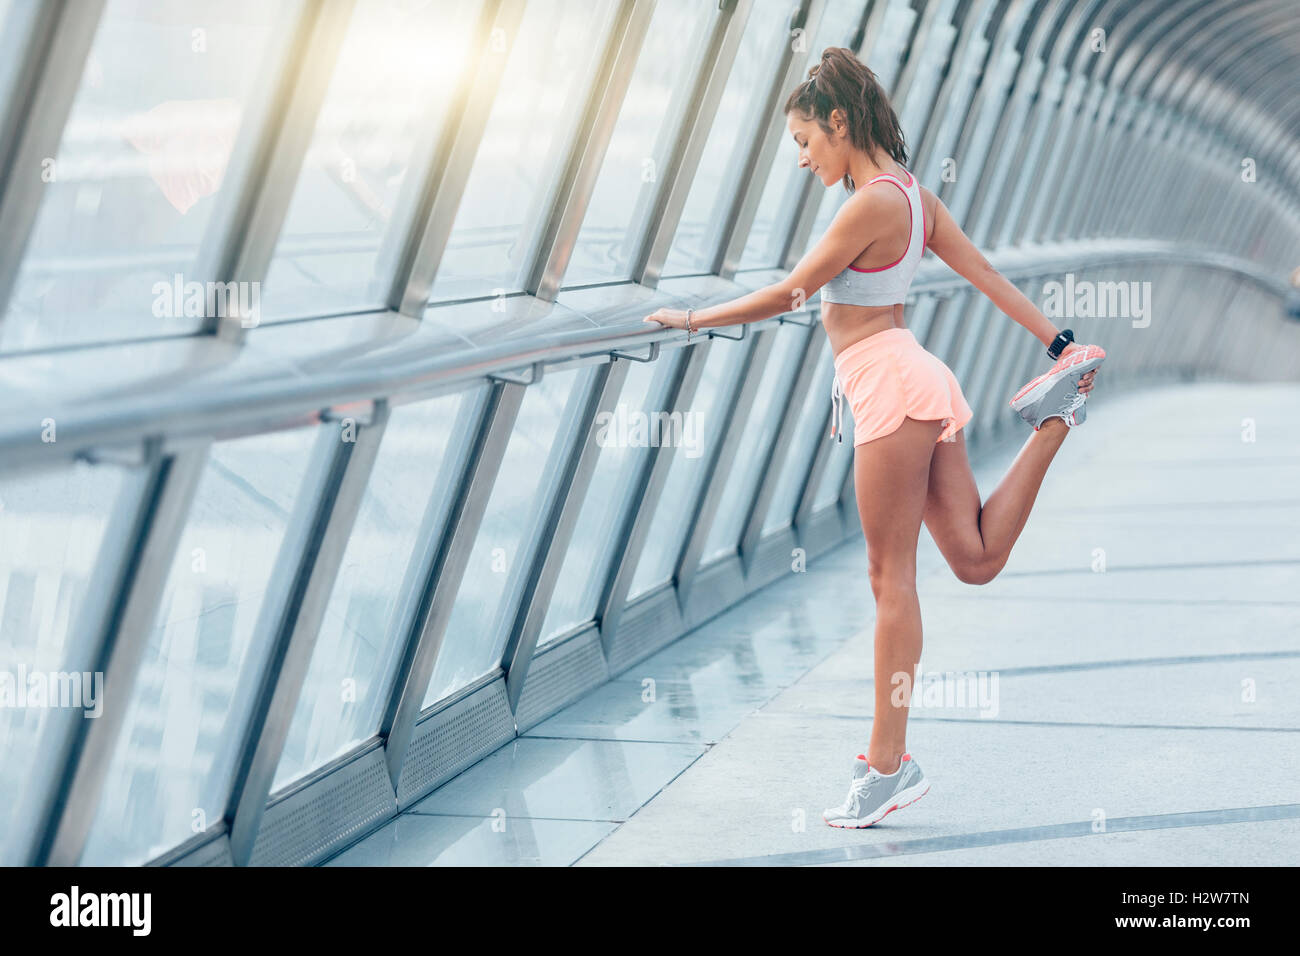 Jeune femme fitness runner stretching jambes avant de courir Banque D'Images